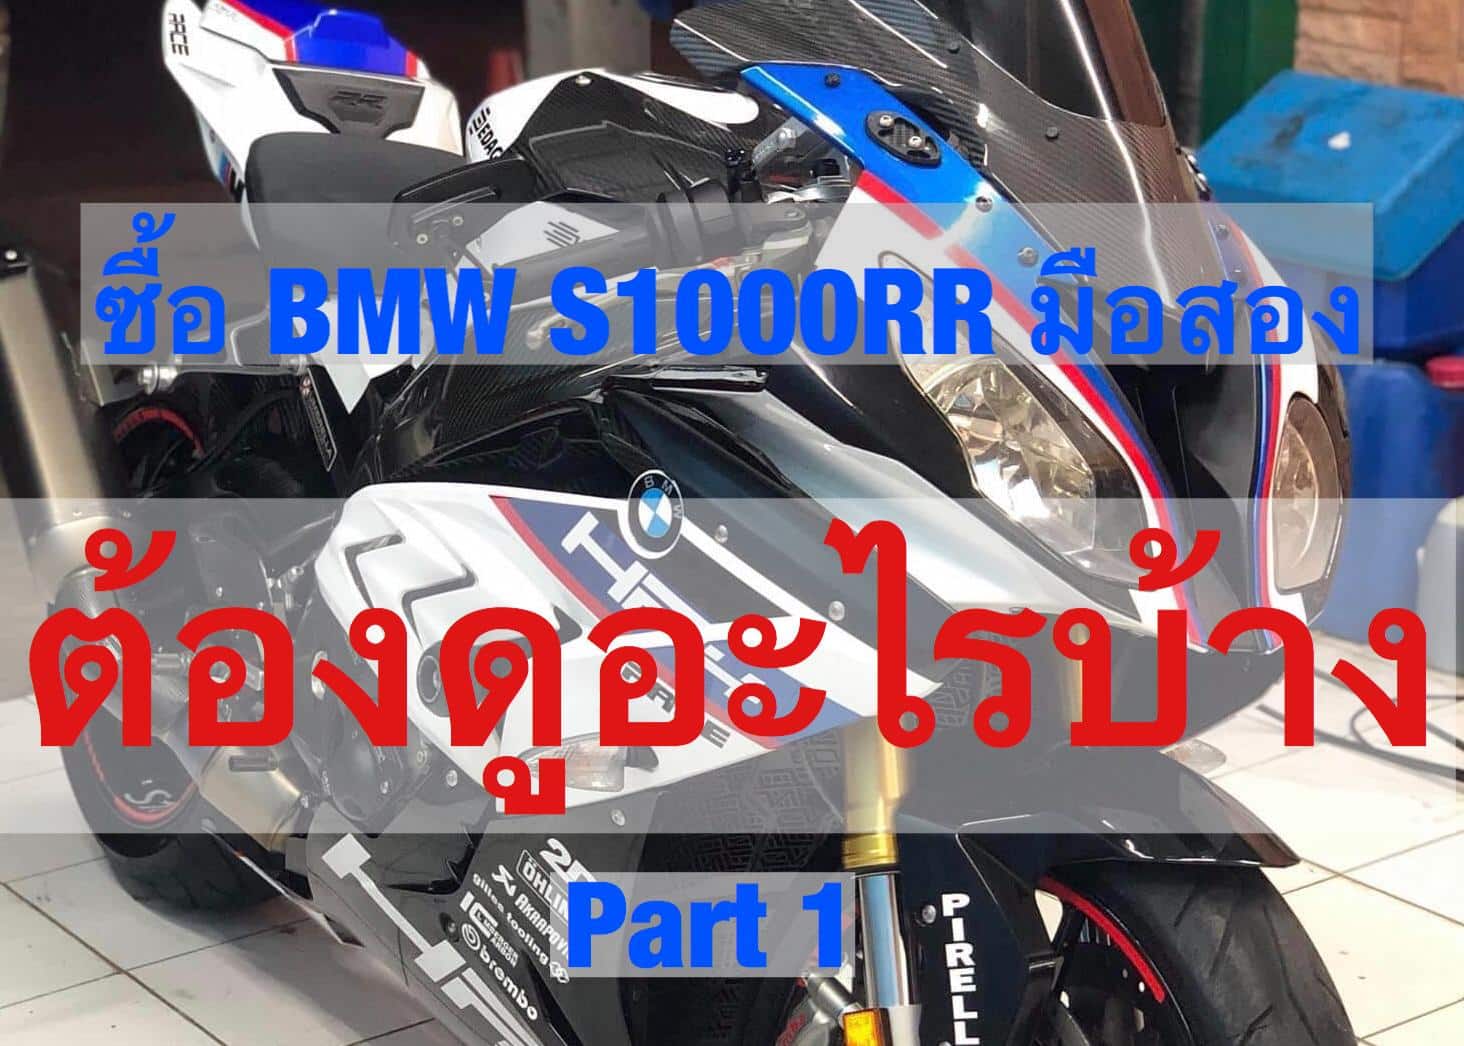 ซื้อ BMW S1000RR มือสอง ต้องดูอะไรบ้าง Part 1